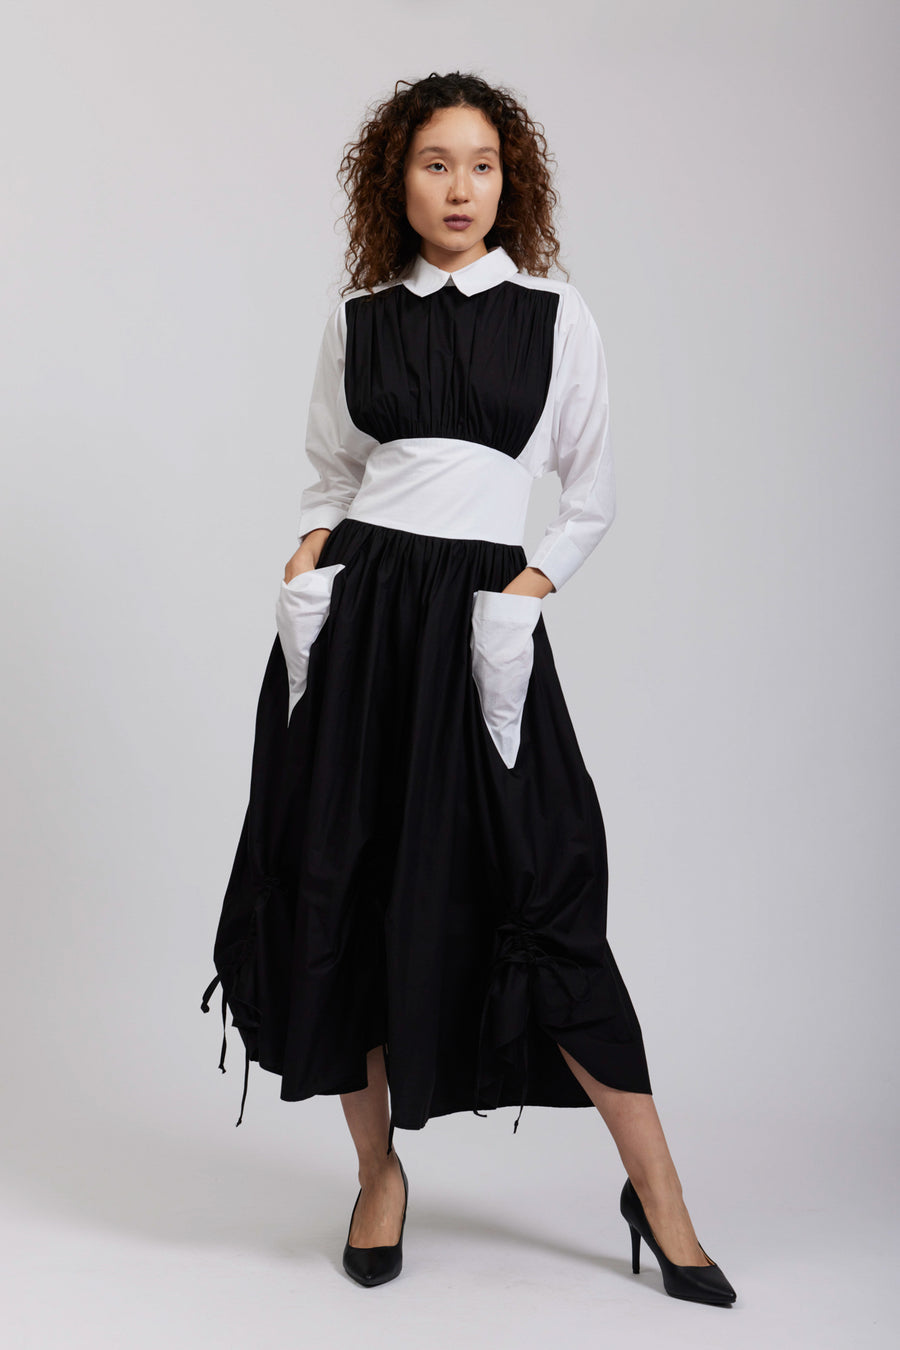 BATSHEVA - Goldie Dress in Black & White